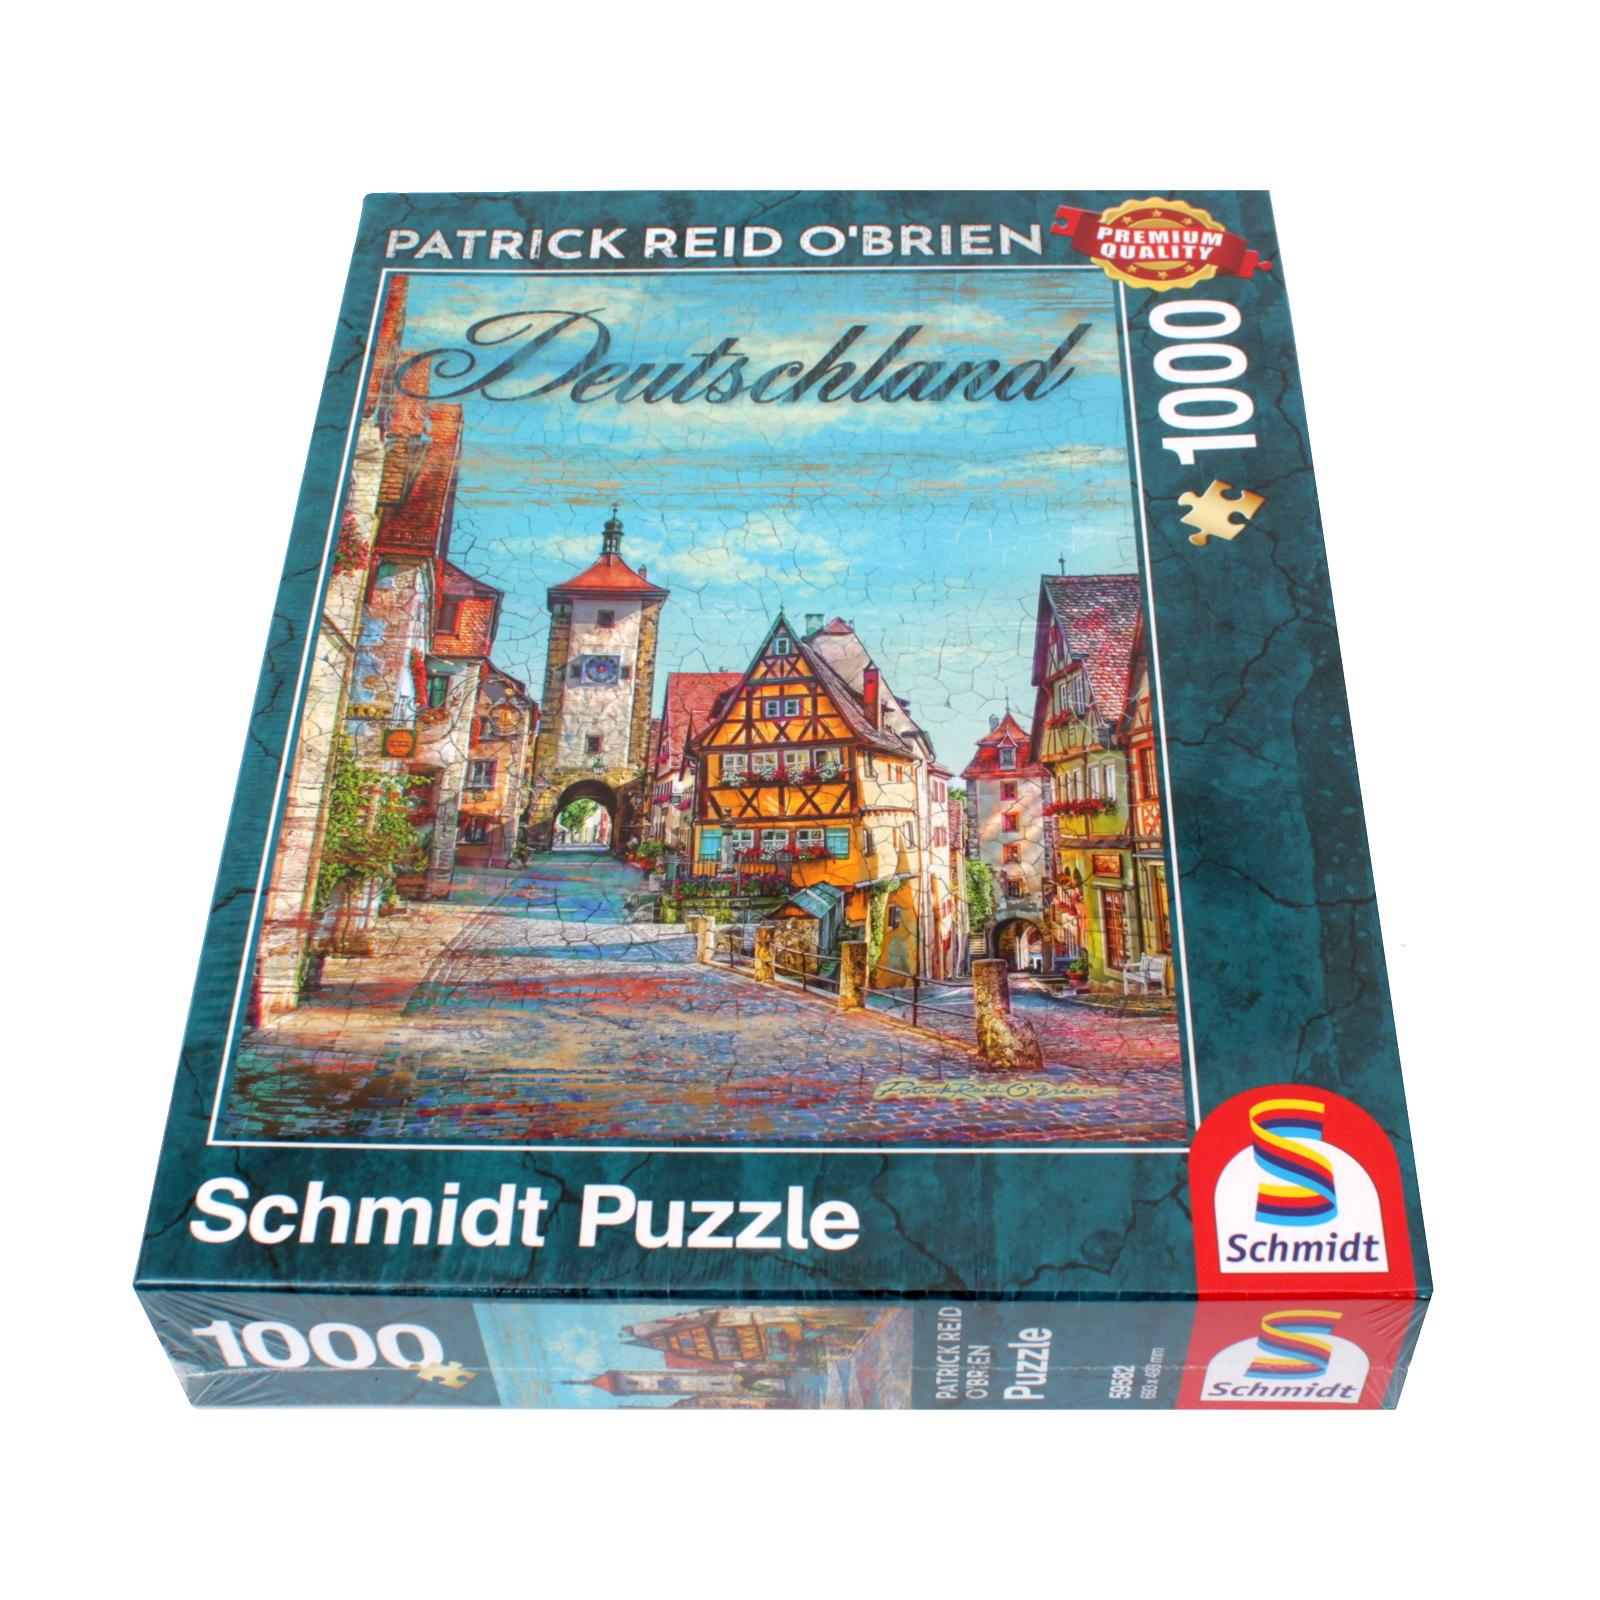 Schmidt Puzzle 59582-1000 Pcs. DEUTSCHLAND ROTHENBURG PATRICK REID O'BRIEN 